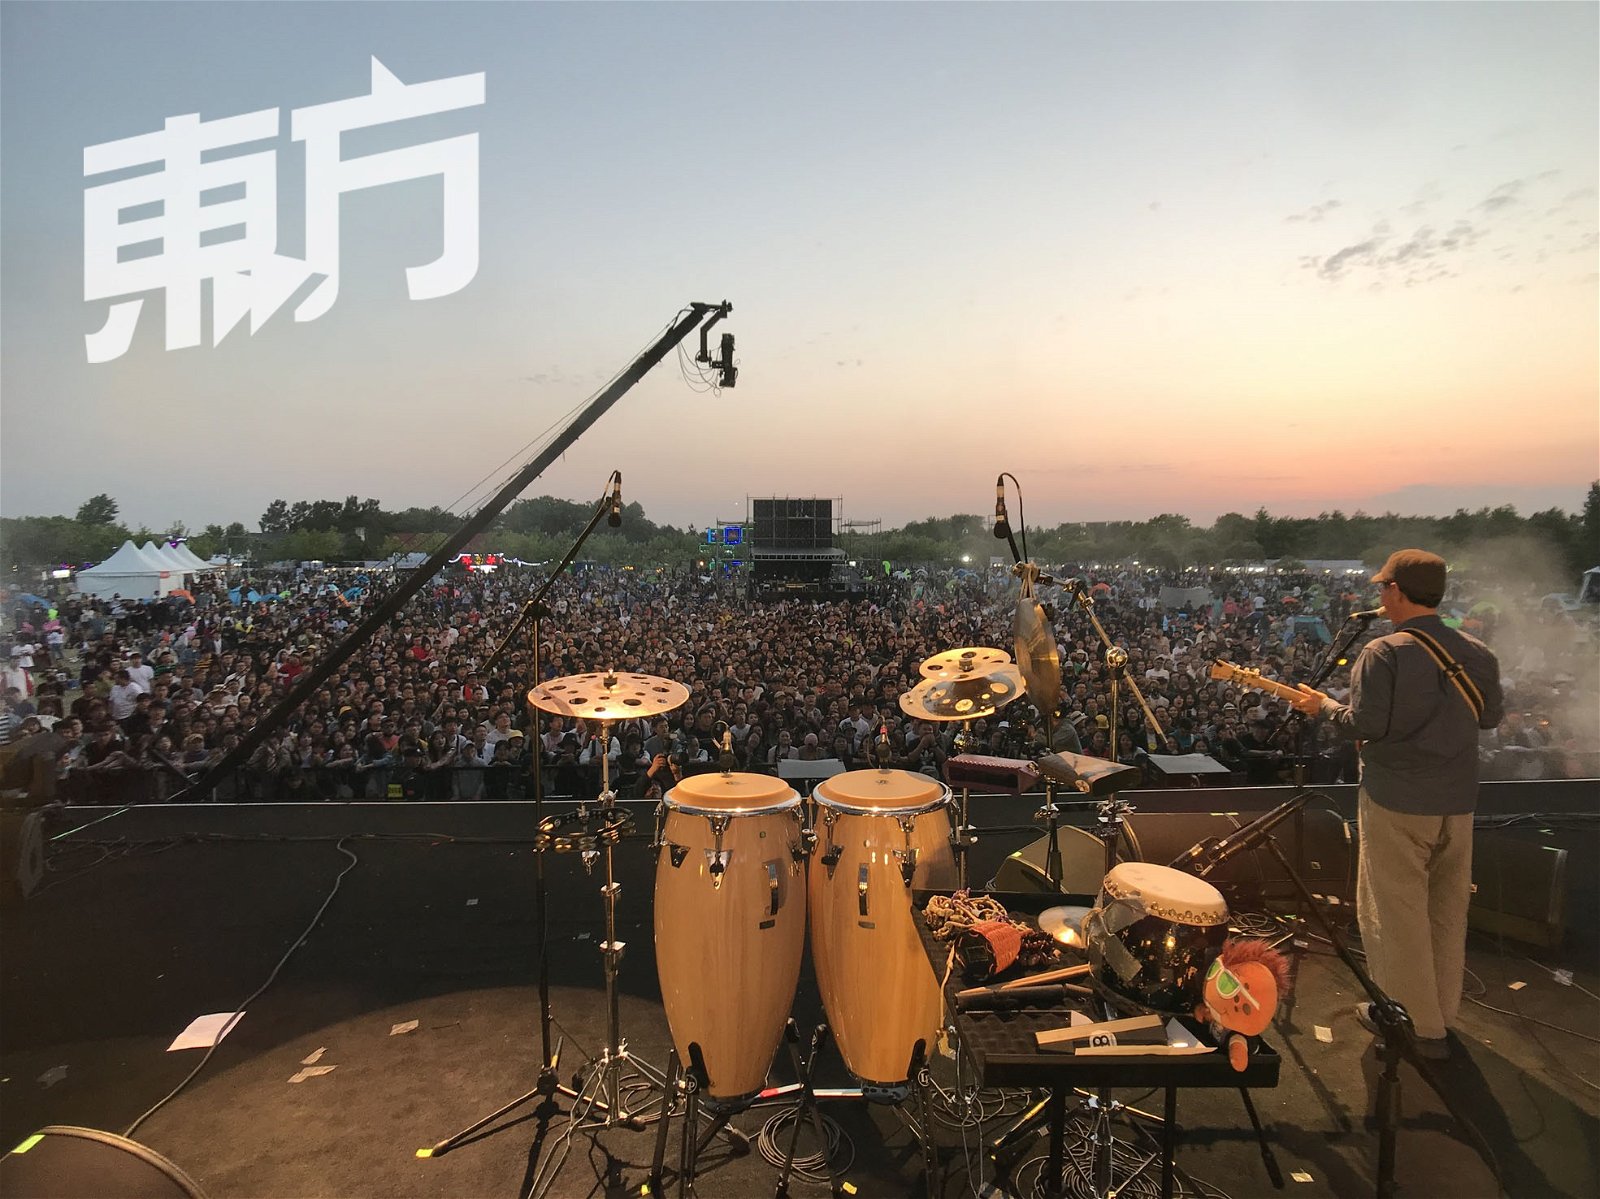 中国苏州迷笛音乐节是中国富影响力的摇滚音乐节之一。生祥乐队于2019年参与该音乐节，台下座无虚席，气氛热闹。